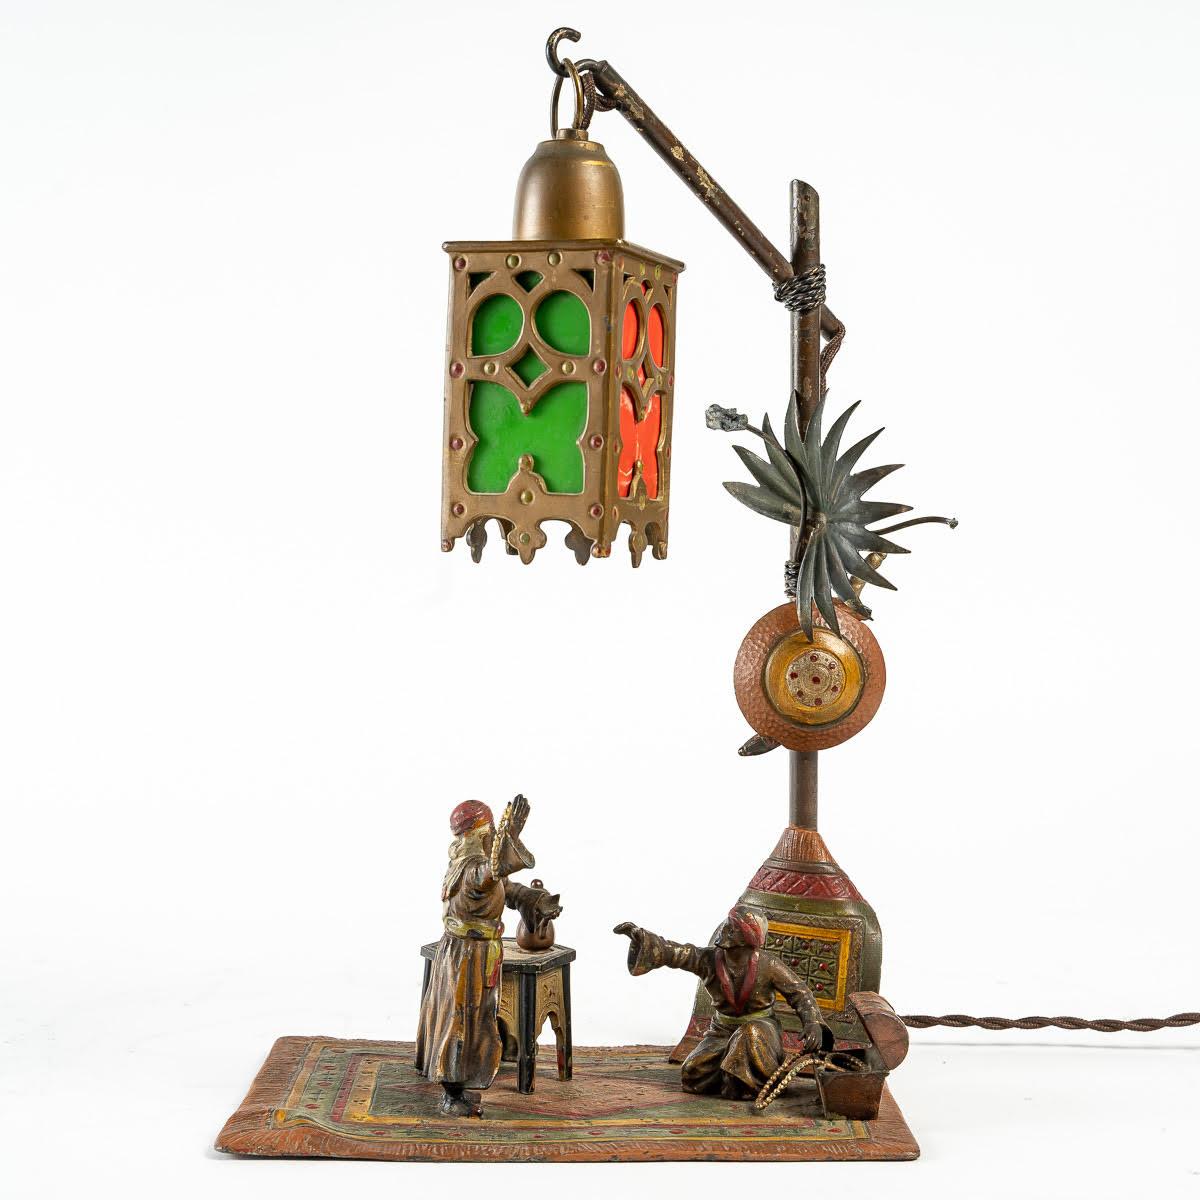 Lampe en bronze de Vienne, orientaliste, 19e siècle.

Lampe orientaliste de Bergman, 19e siècle, bronze de Vienne.

Dimensions : h : 34cm, l : 21cm, p : 14cm